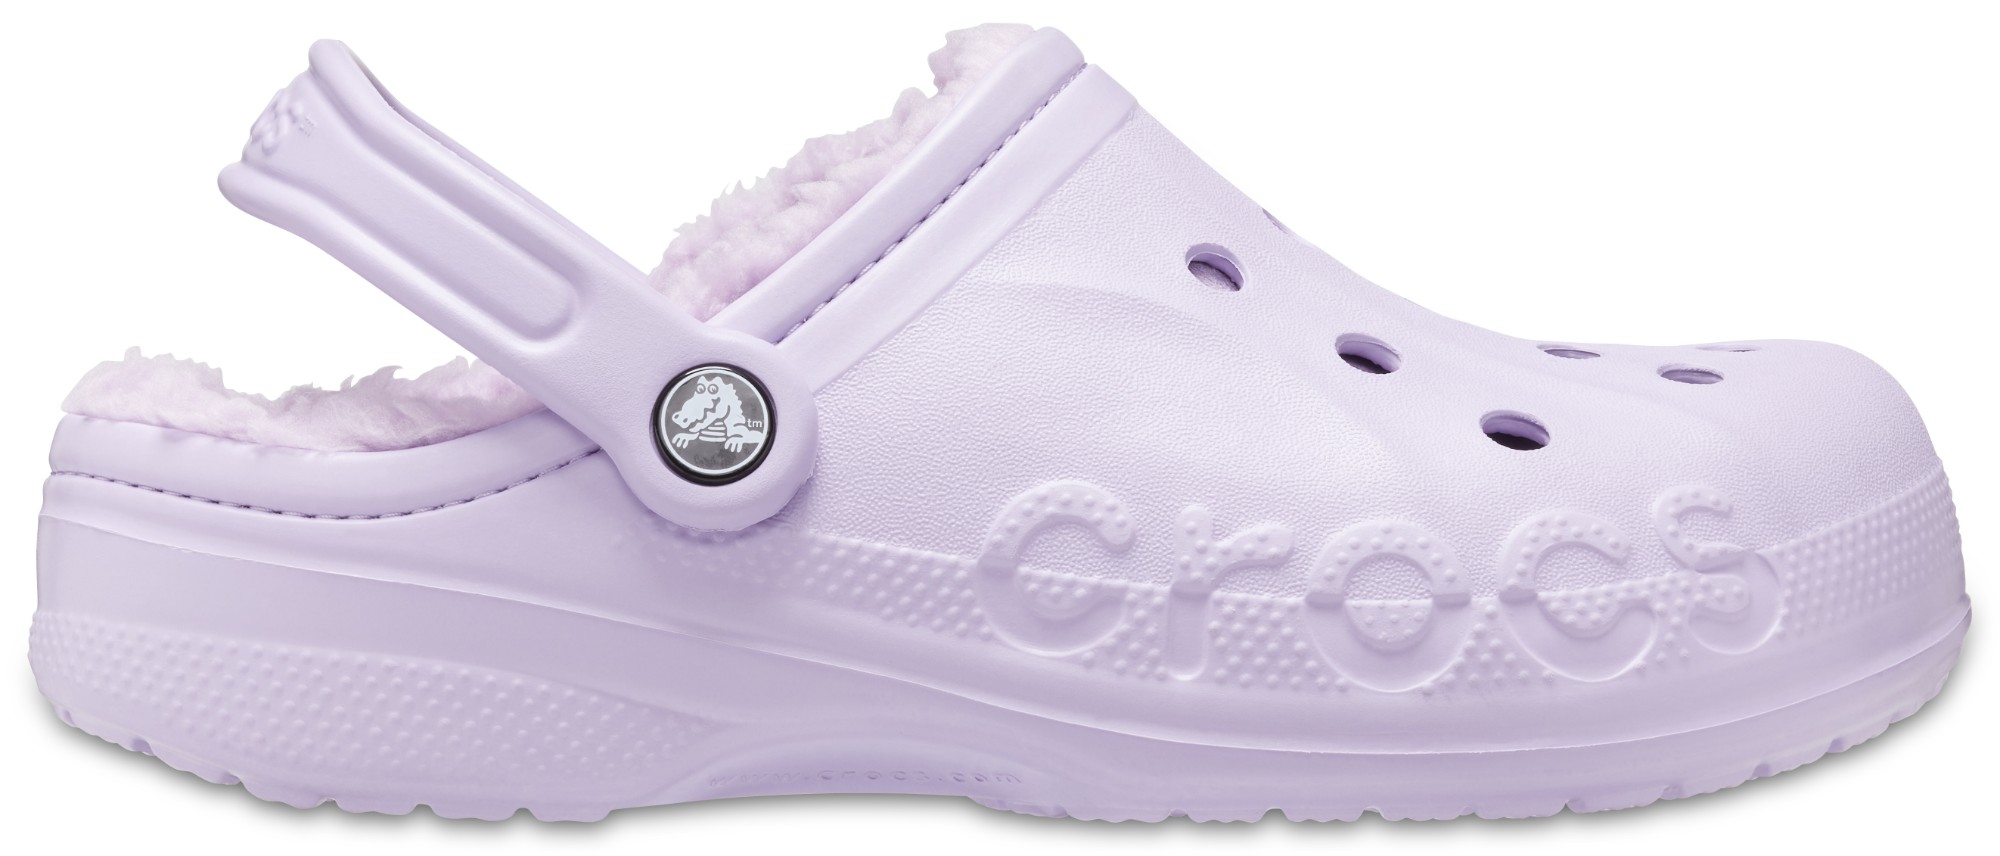 Crocs™ Baya Lined Clog Lavender/Lavender 41